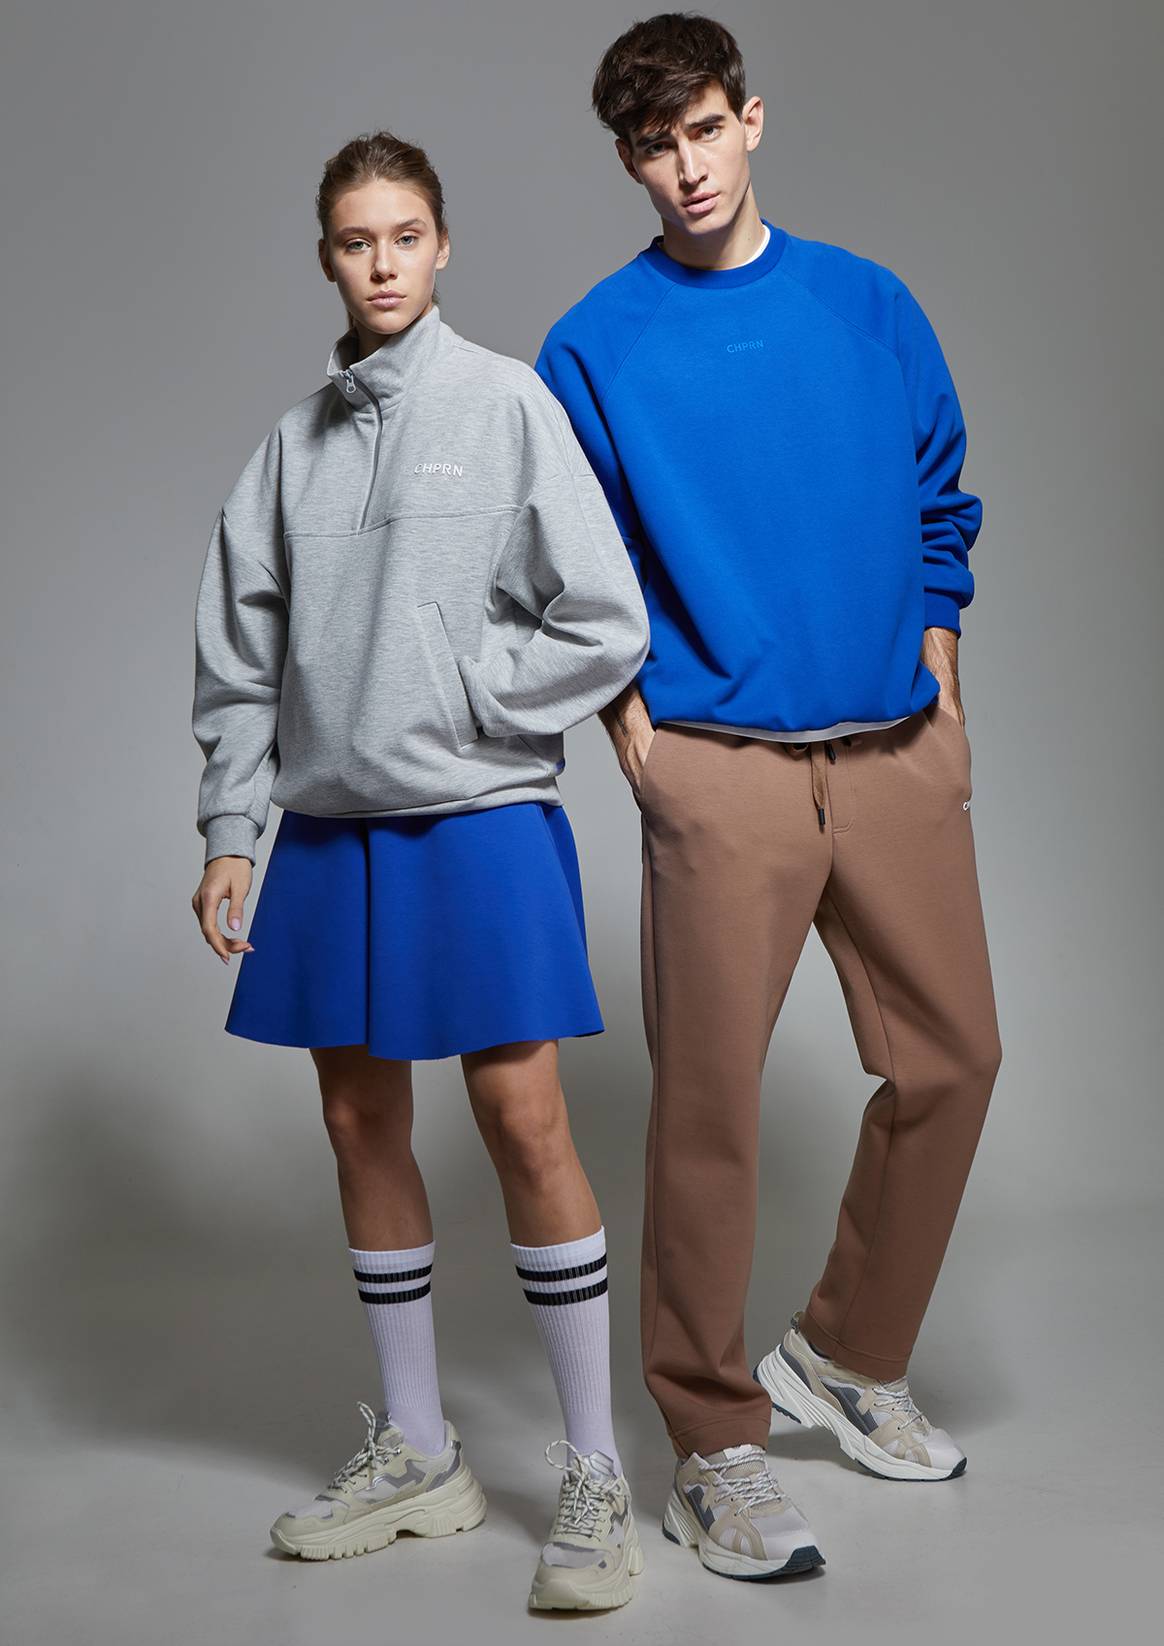 Chapurin впервые выпустили спортивную линию одежды